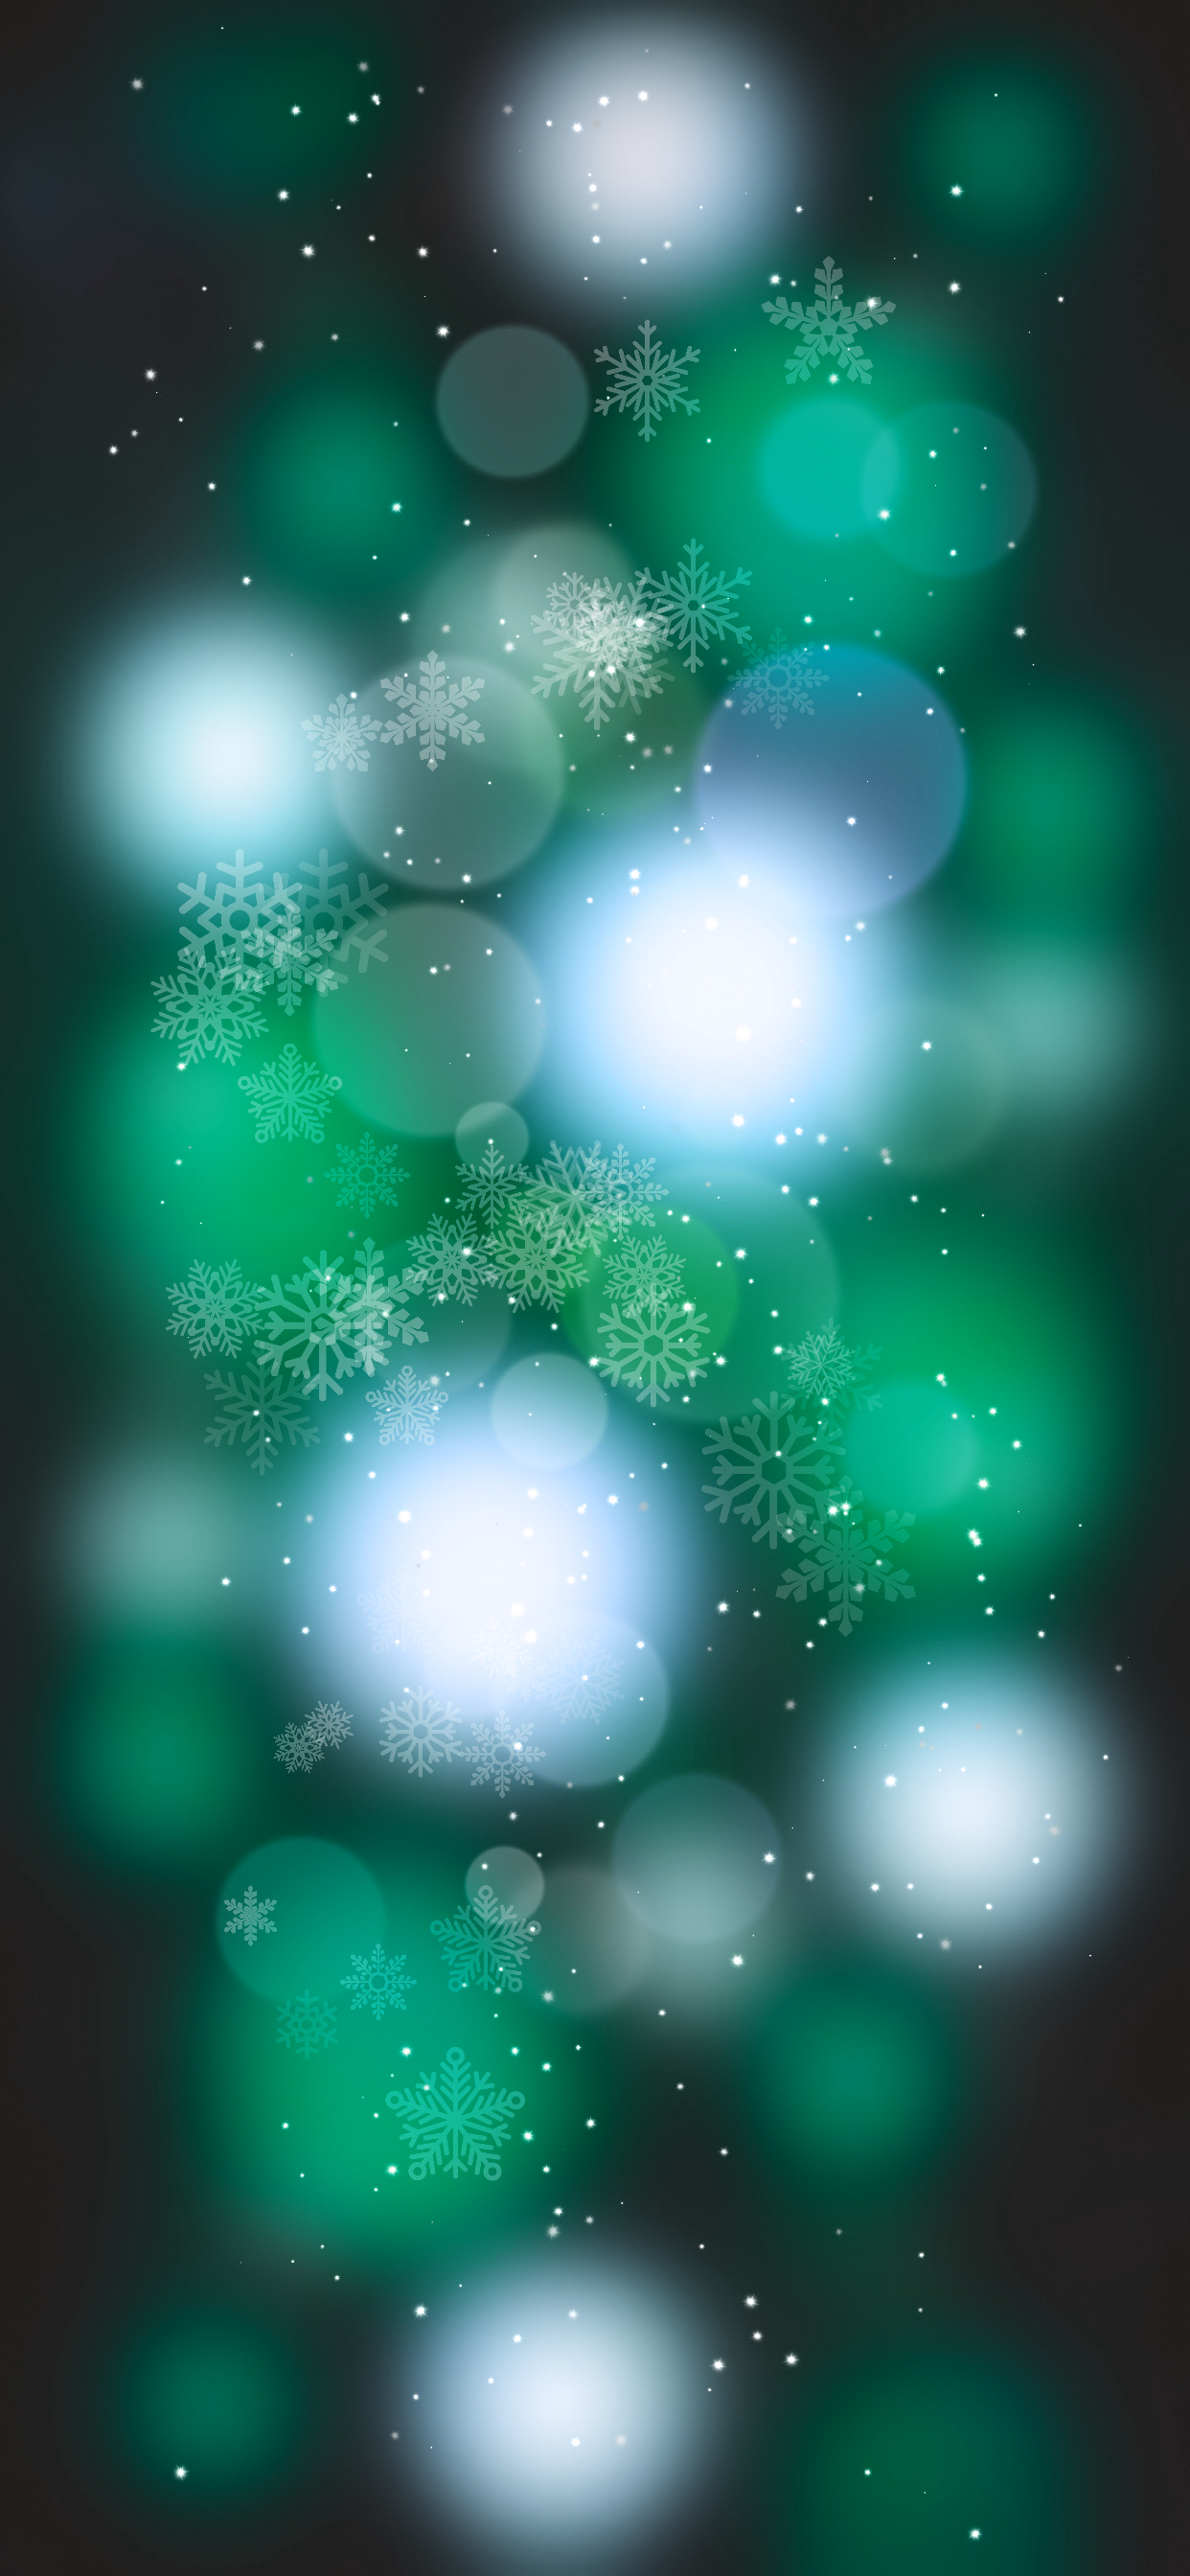 Pazifikblau, IOS 14, Azure, Astronomisches Objekt, Aqua. Wallpaper in 1242x2688 Resolution